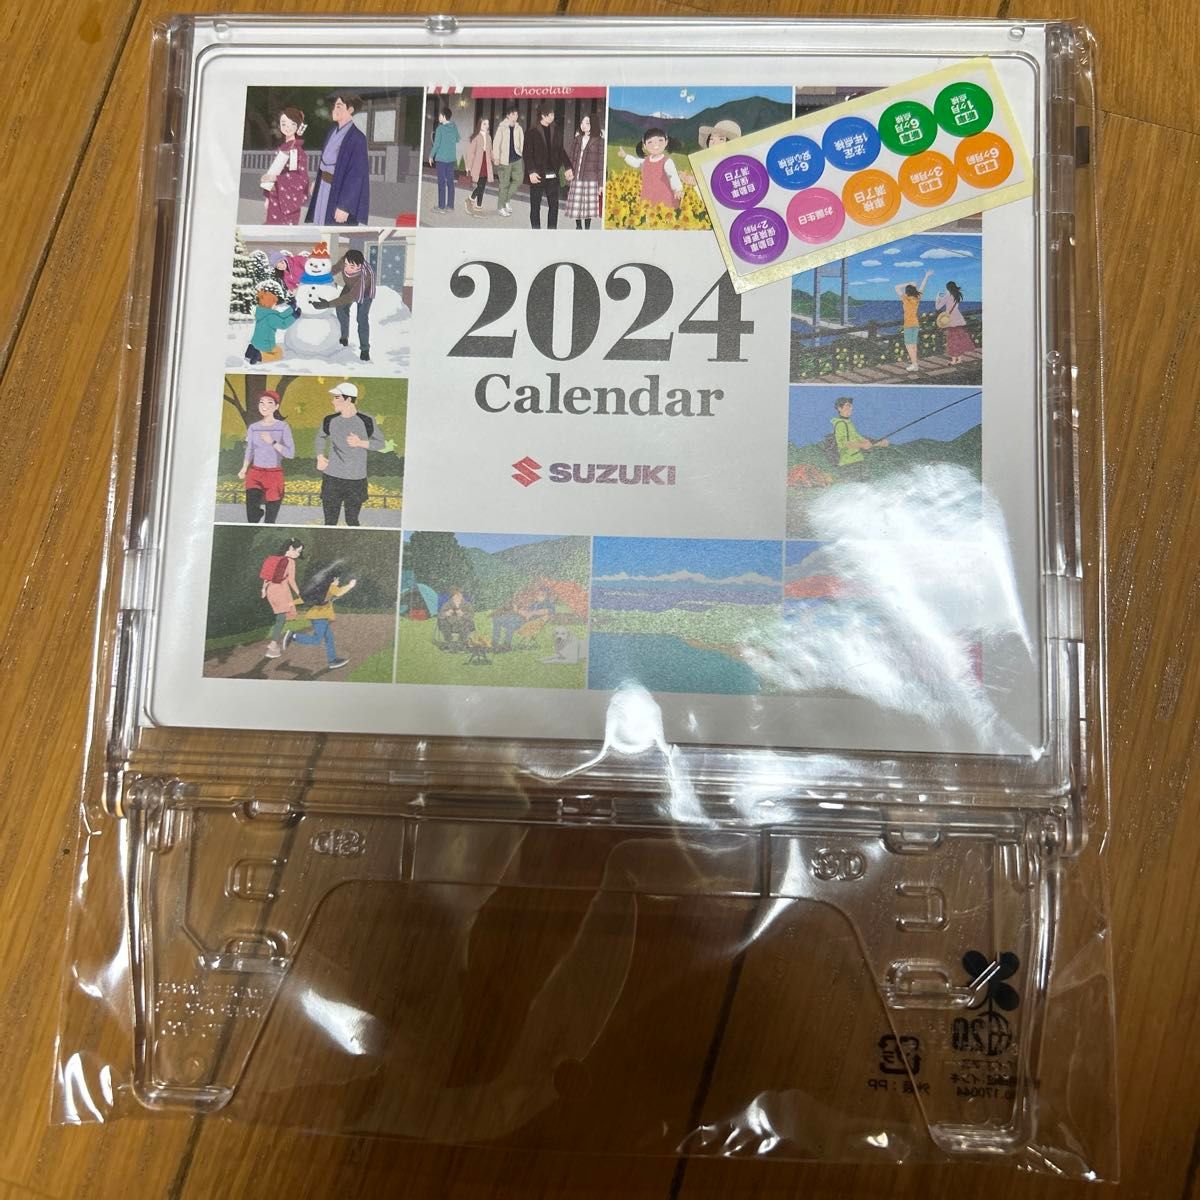 SUZUKI卓上カレンダー 2024